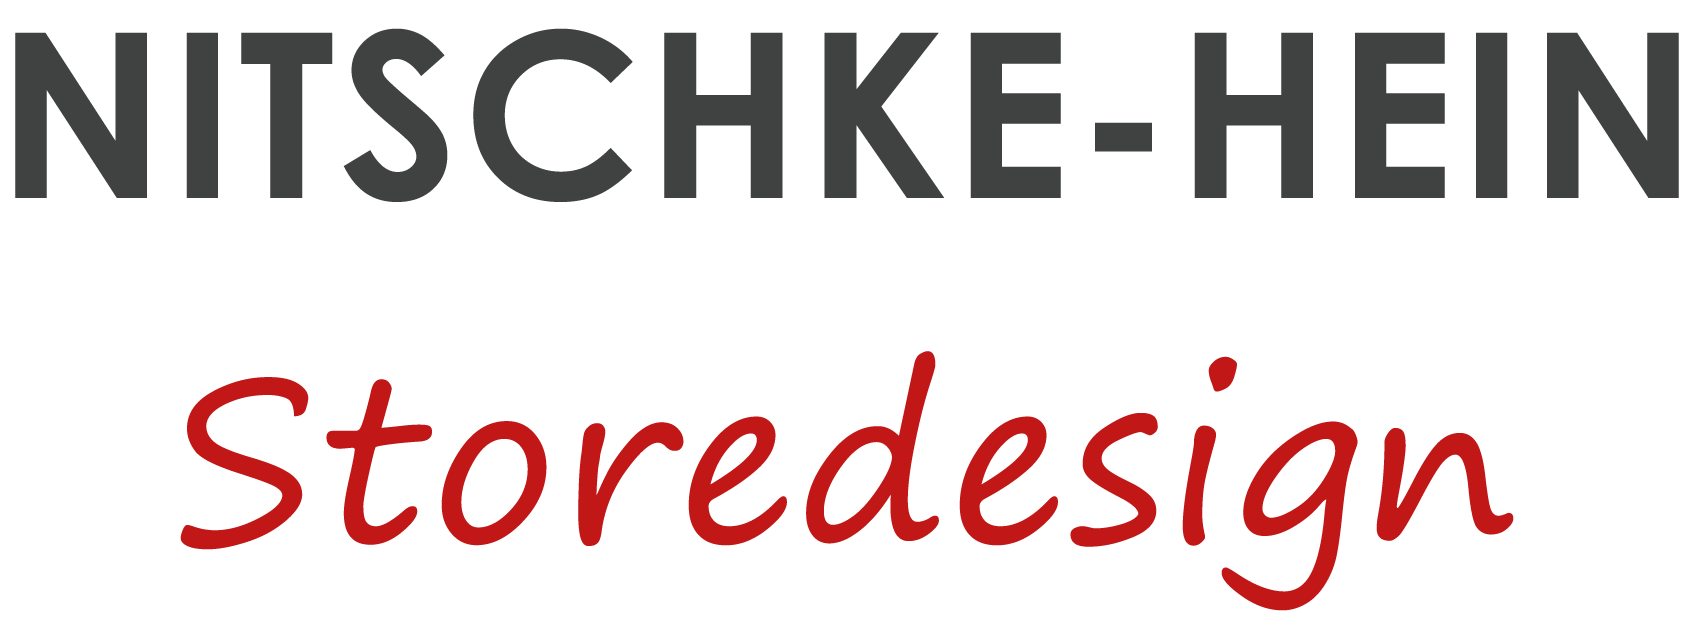 Nitschke-Hein - Storedesign